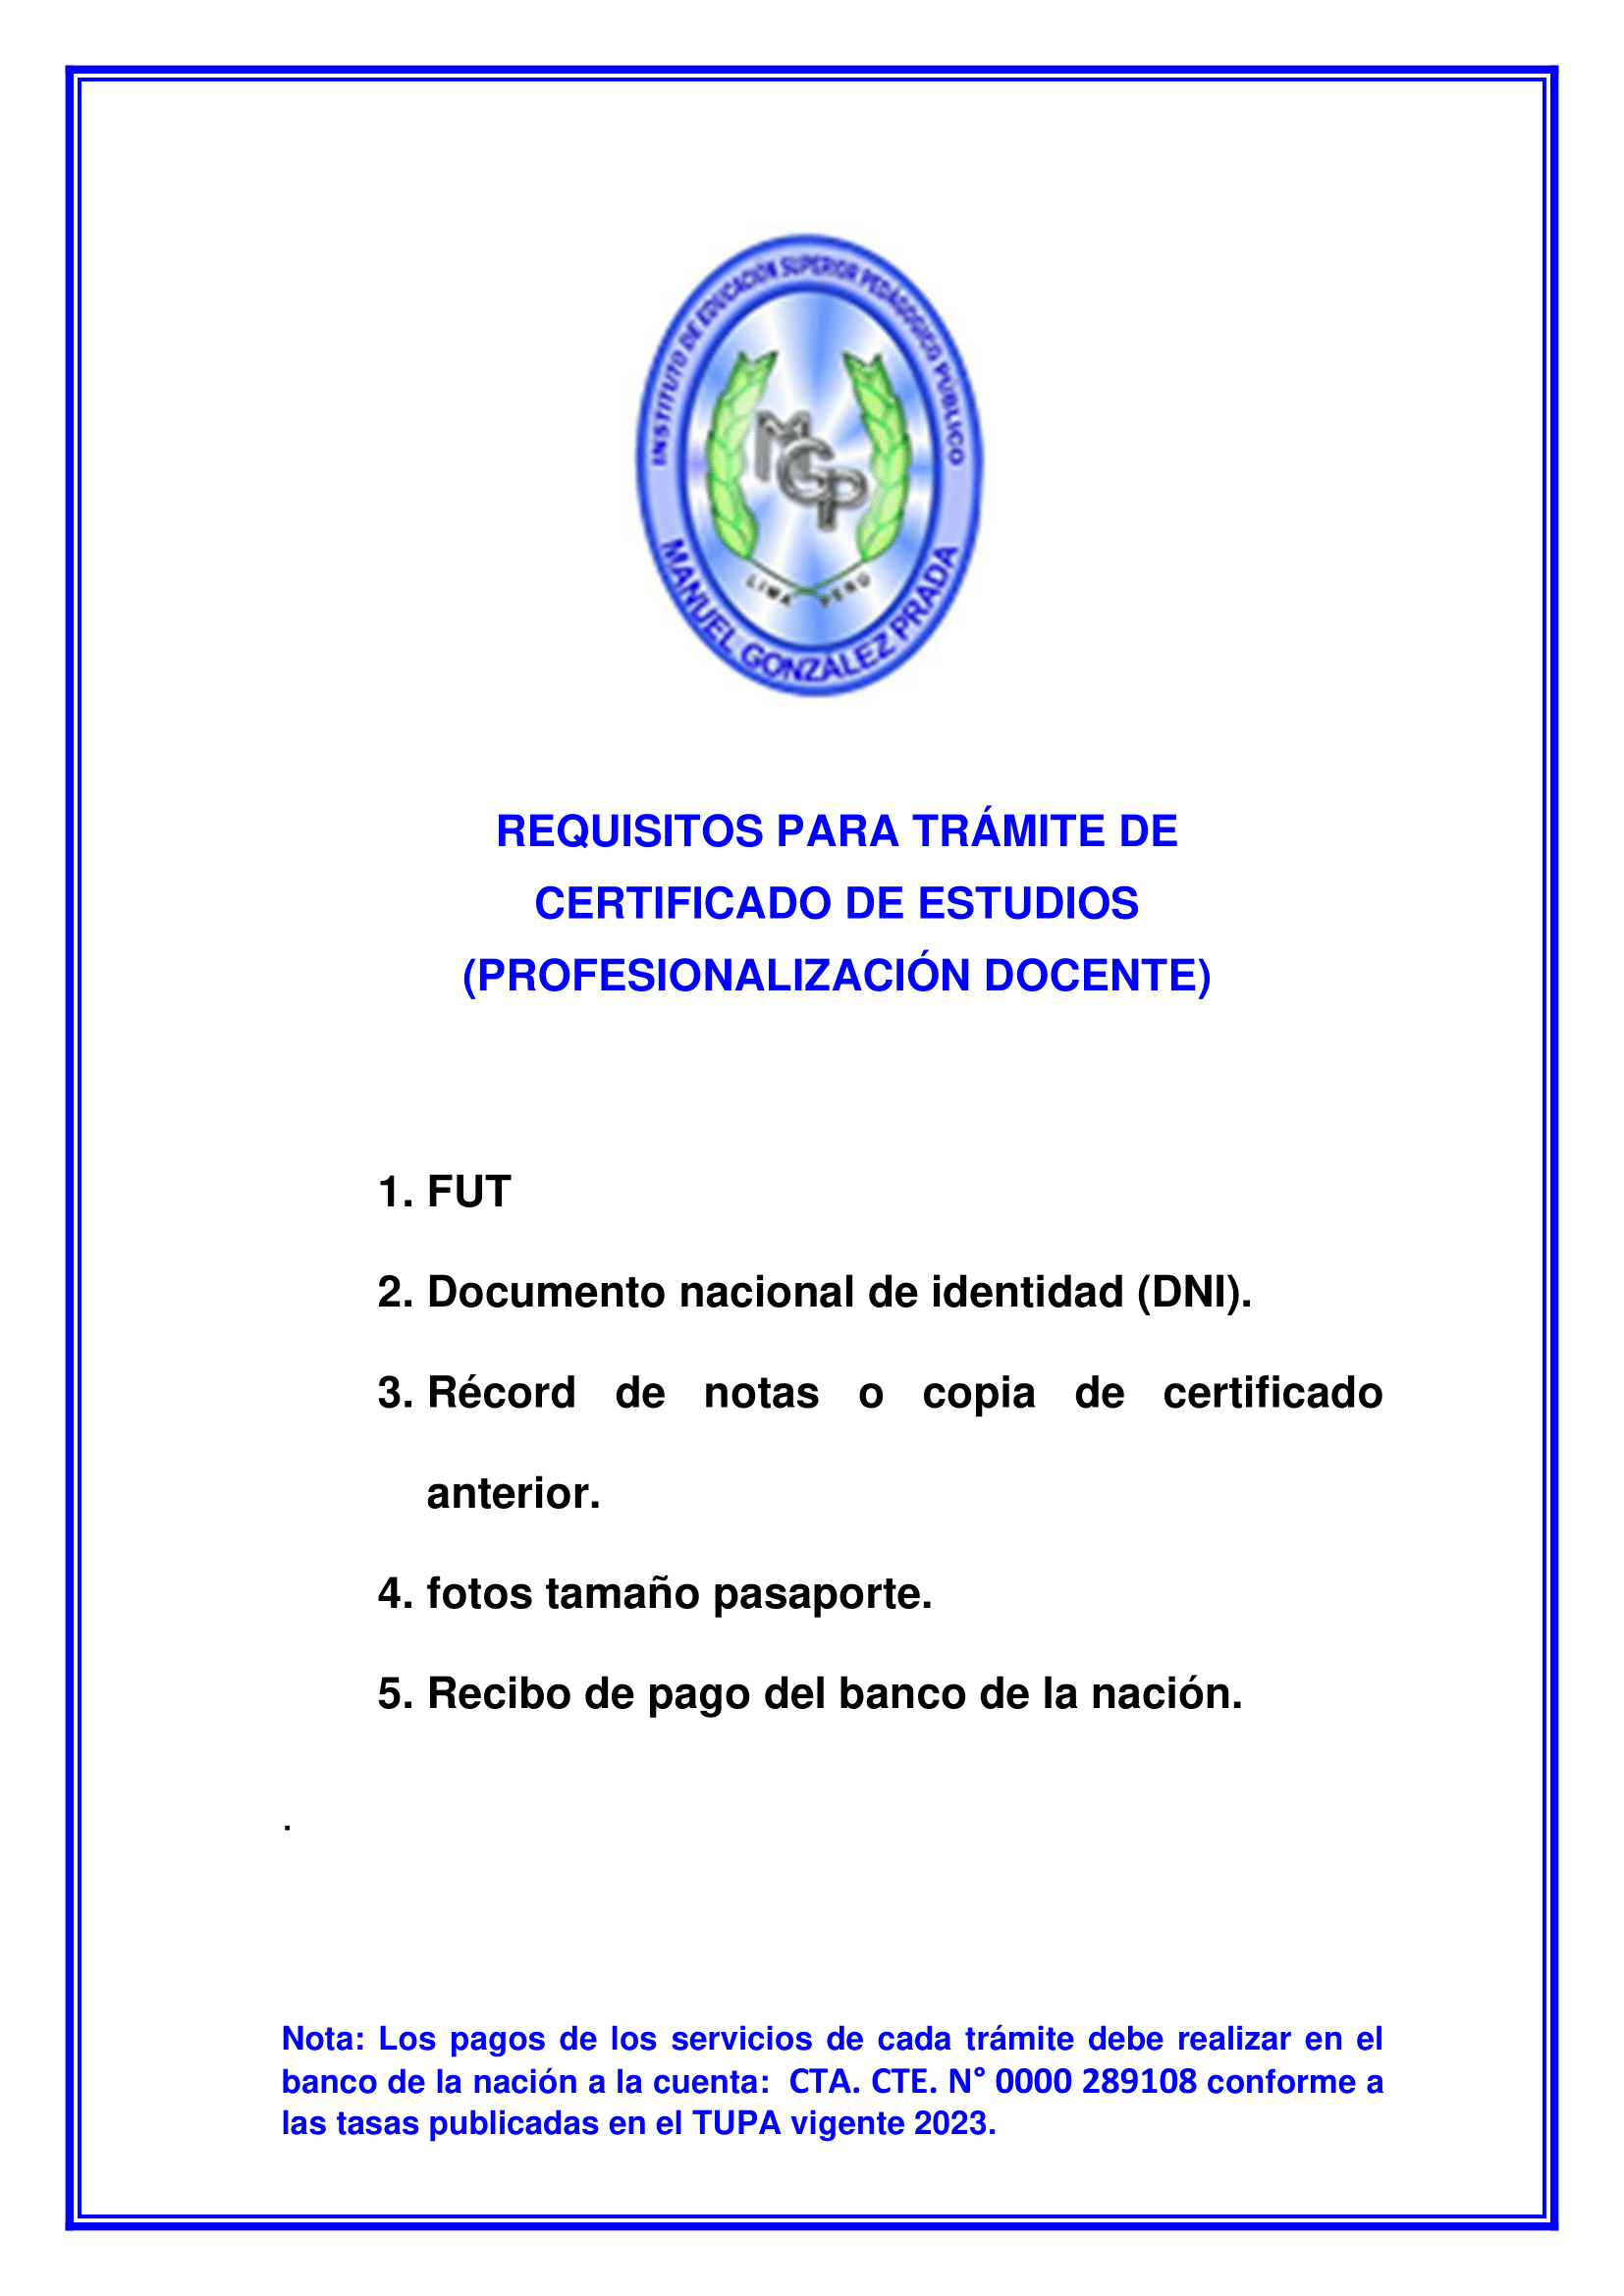 REQUISTOS DE TRAMITES VIRTUAL 2023 docx-02